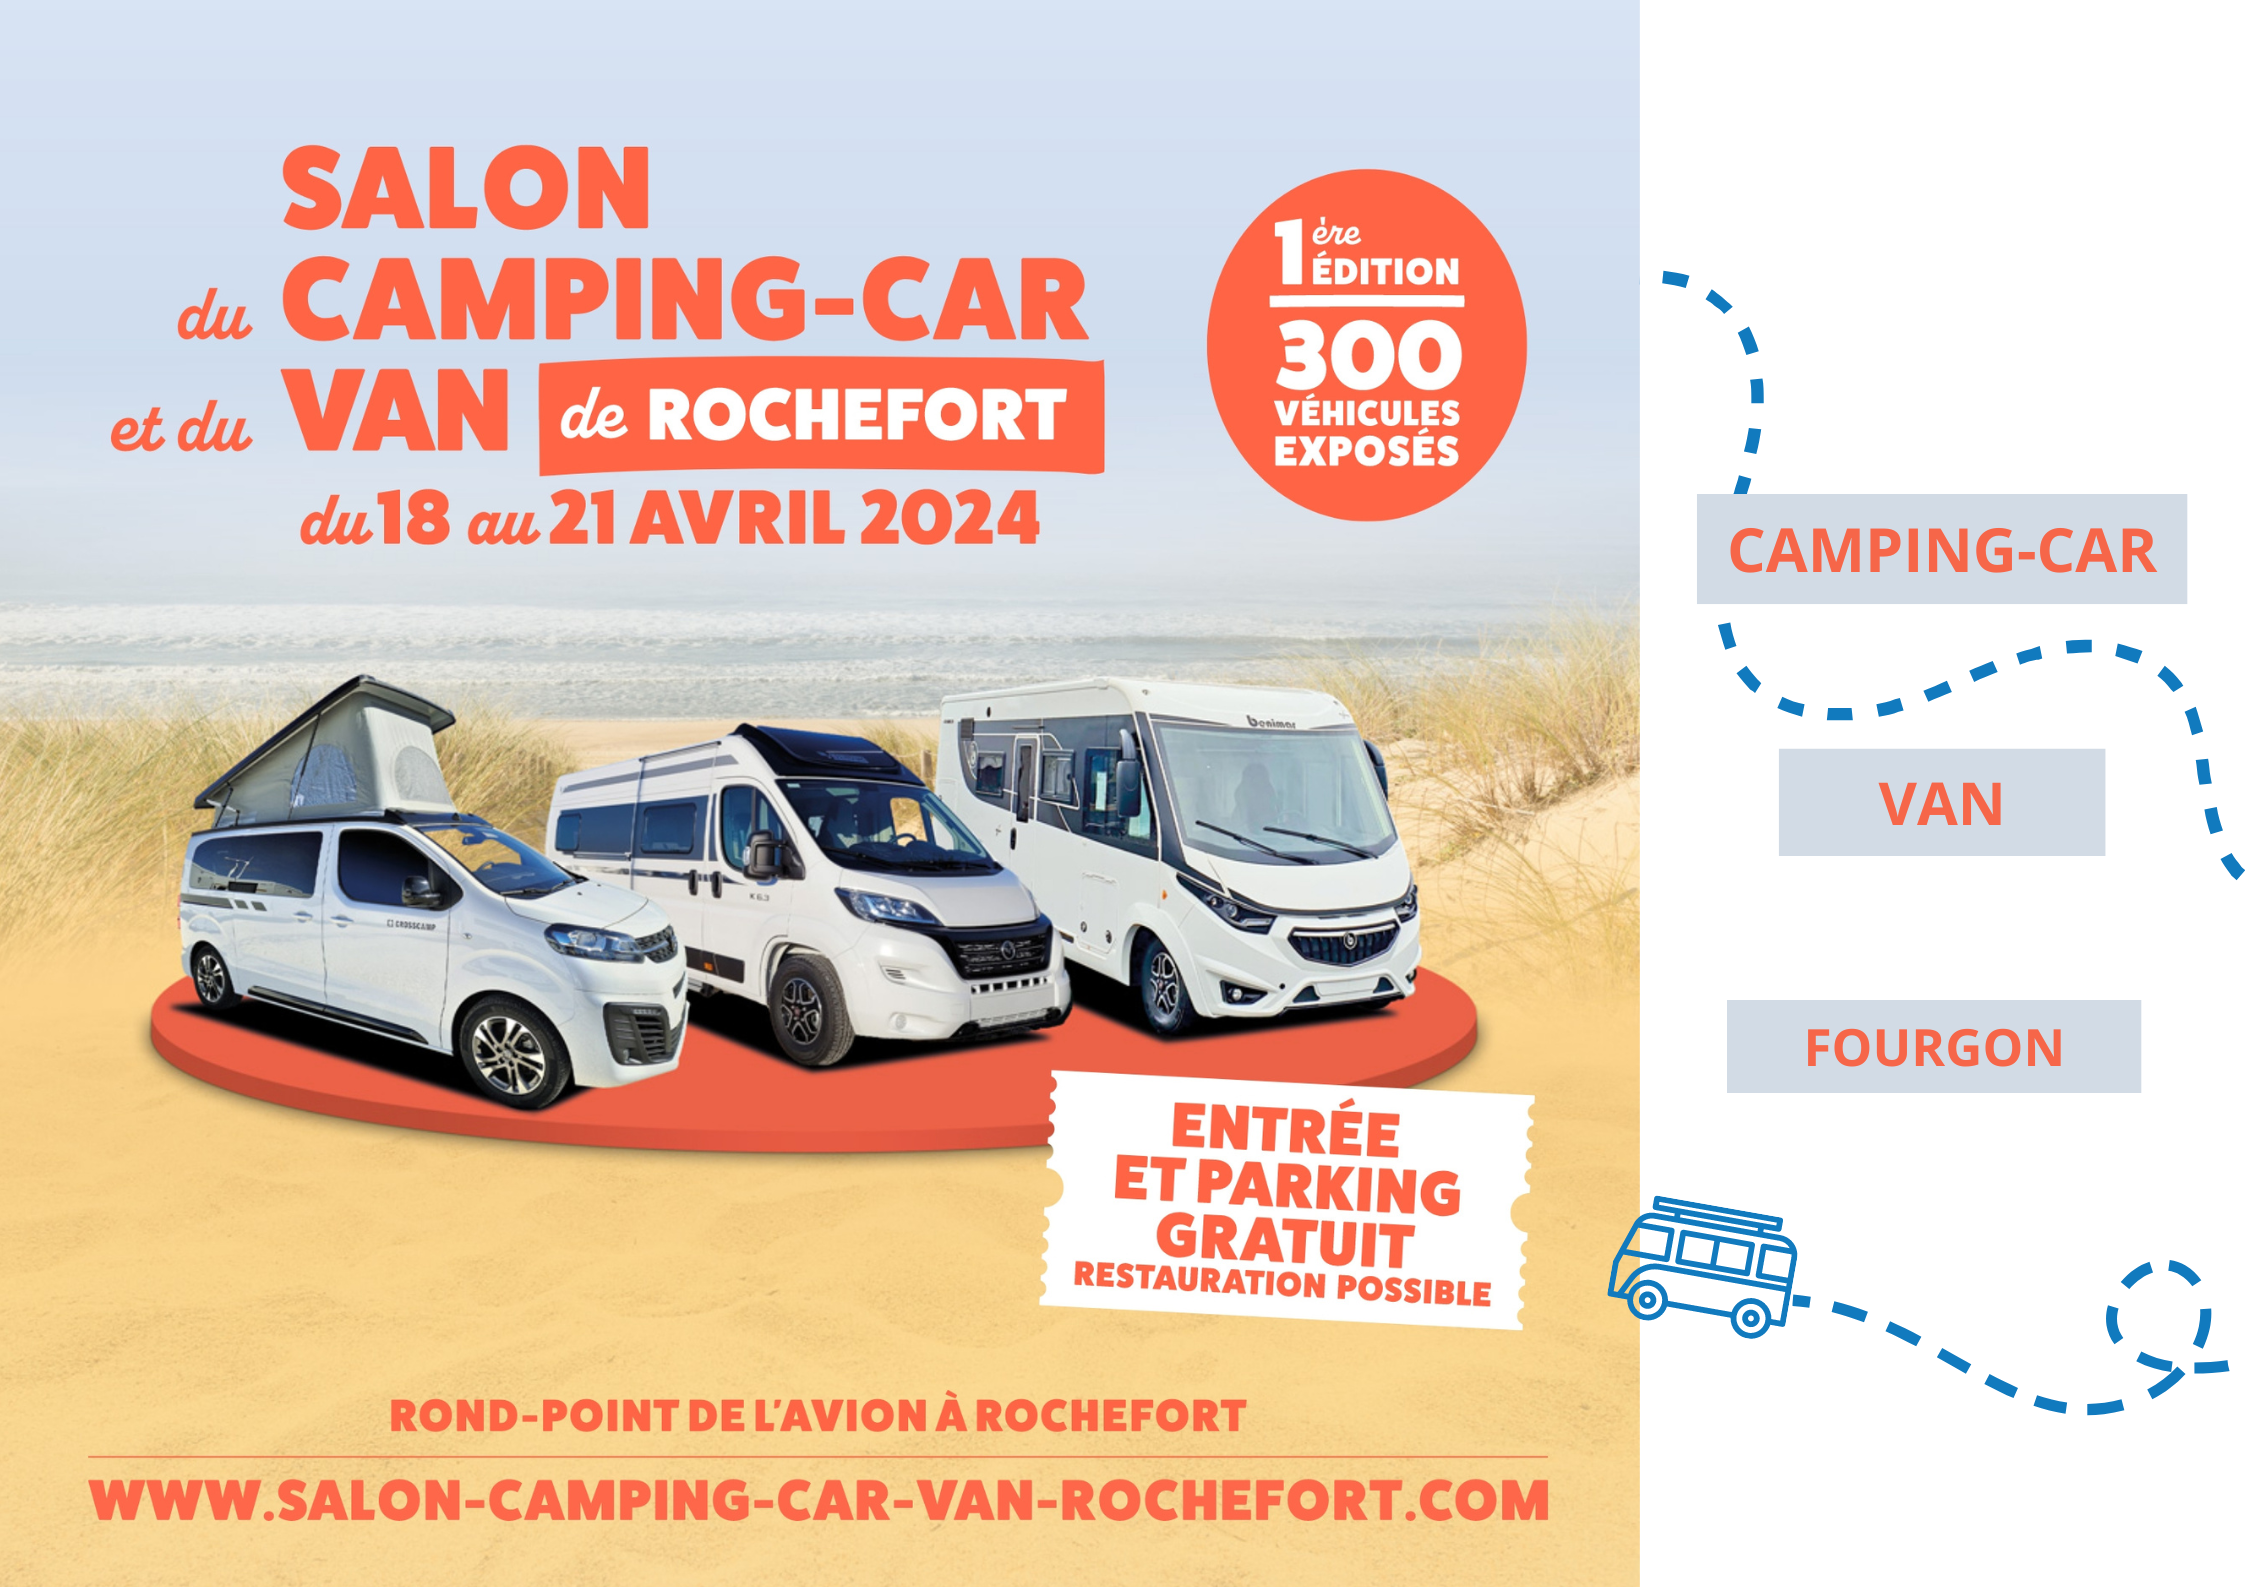 Salon du camping-car et du van